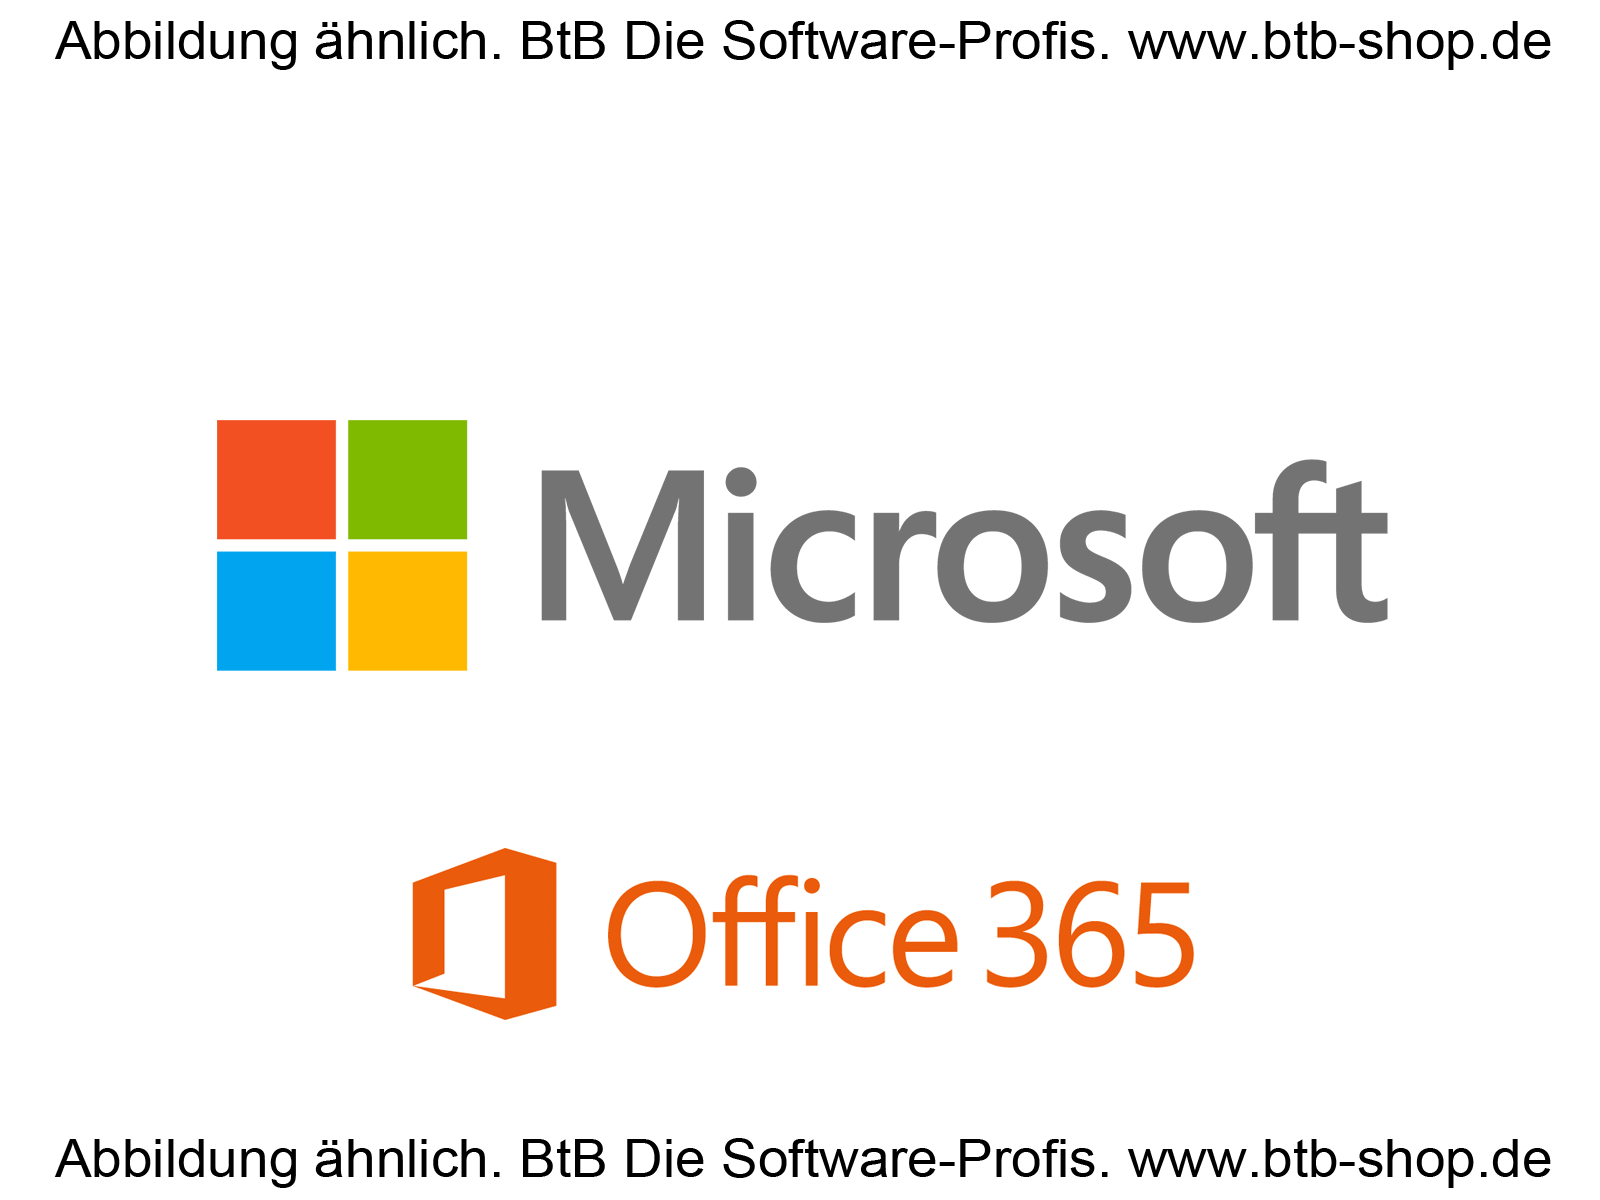 Microsoft Logo und Office365 Abbildung